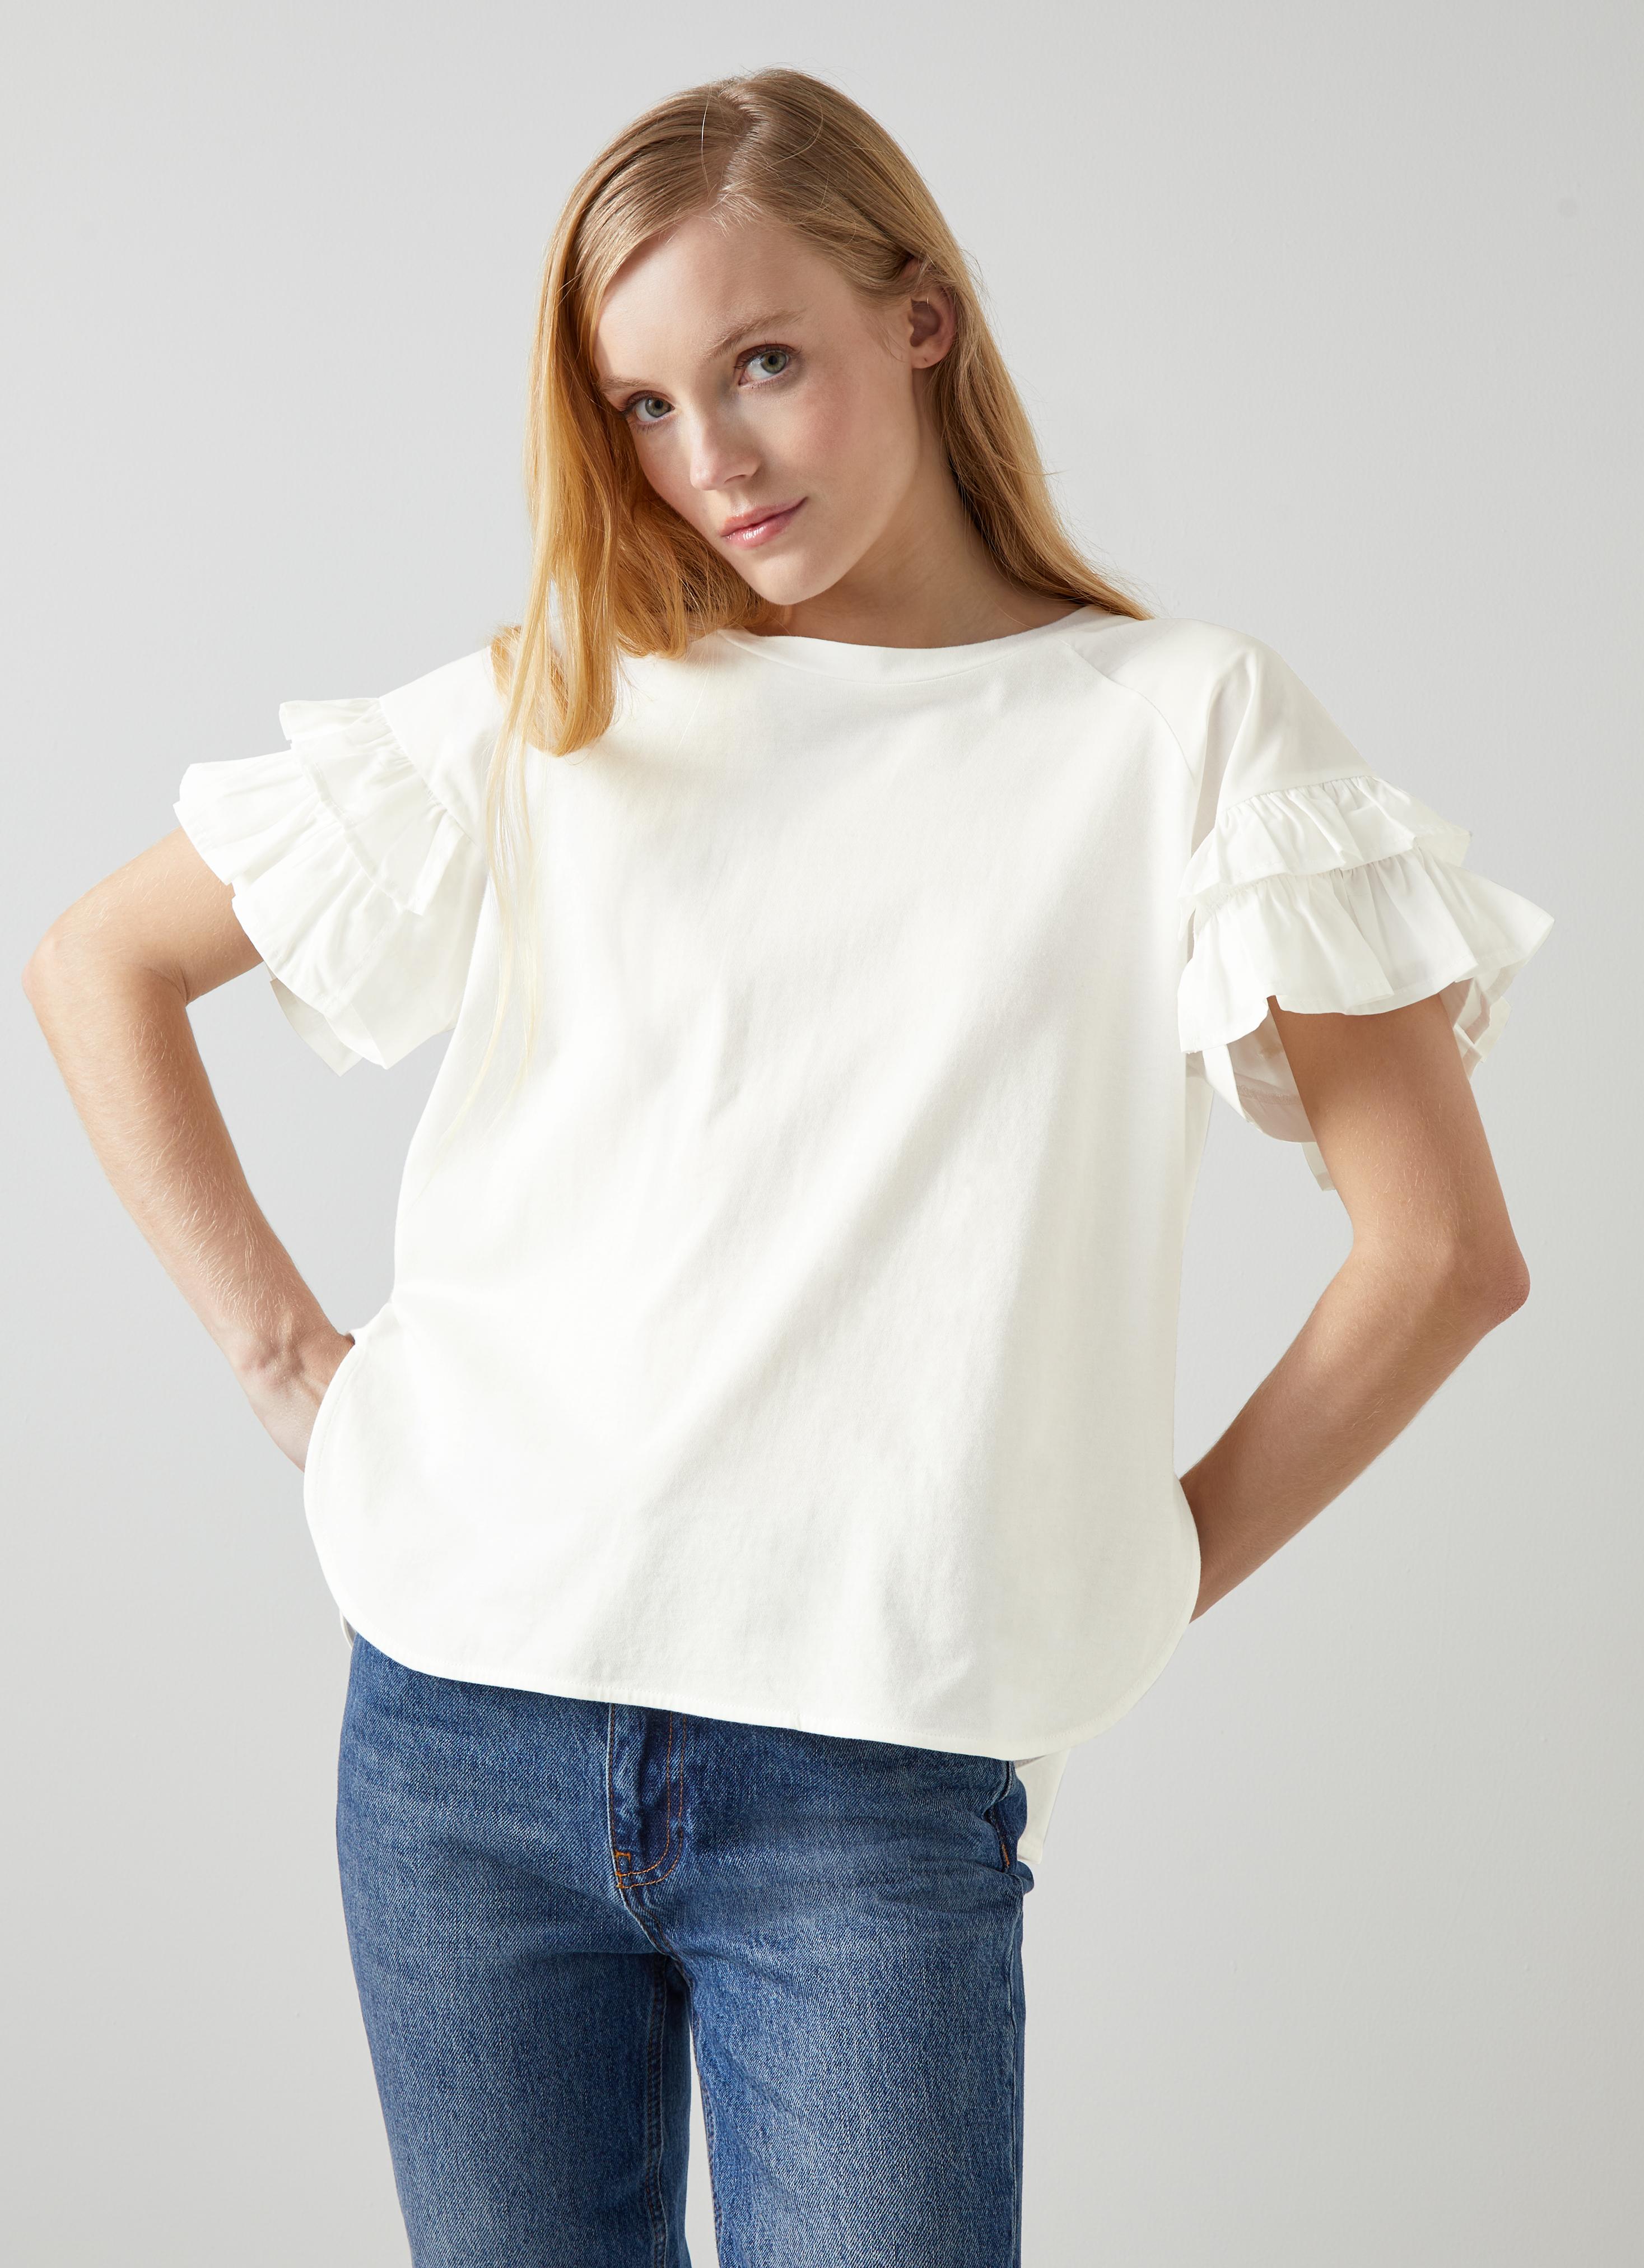 L.K.Bennett Allie White Organic Cotton T-Shirt, White